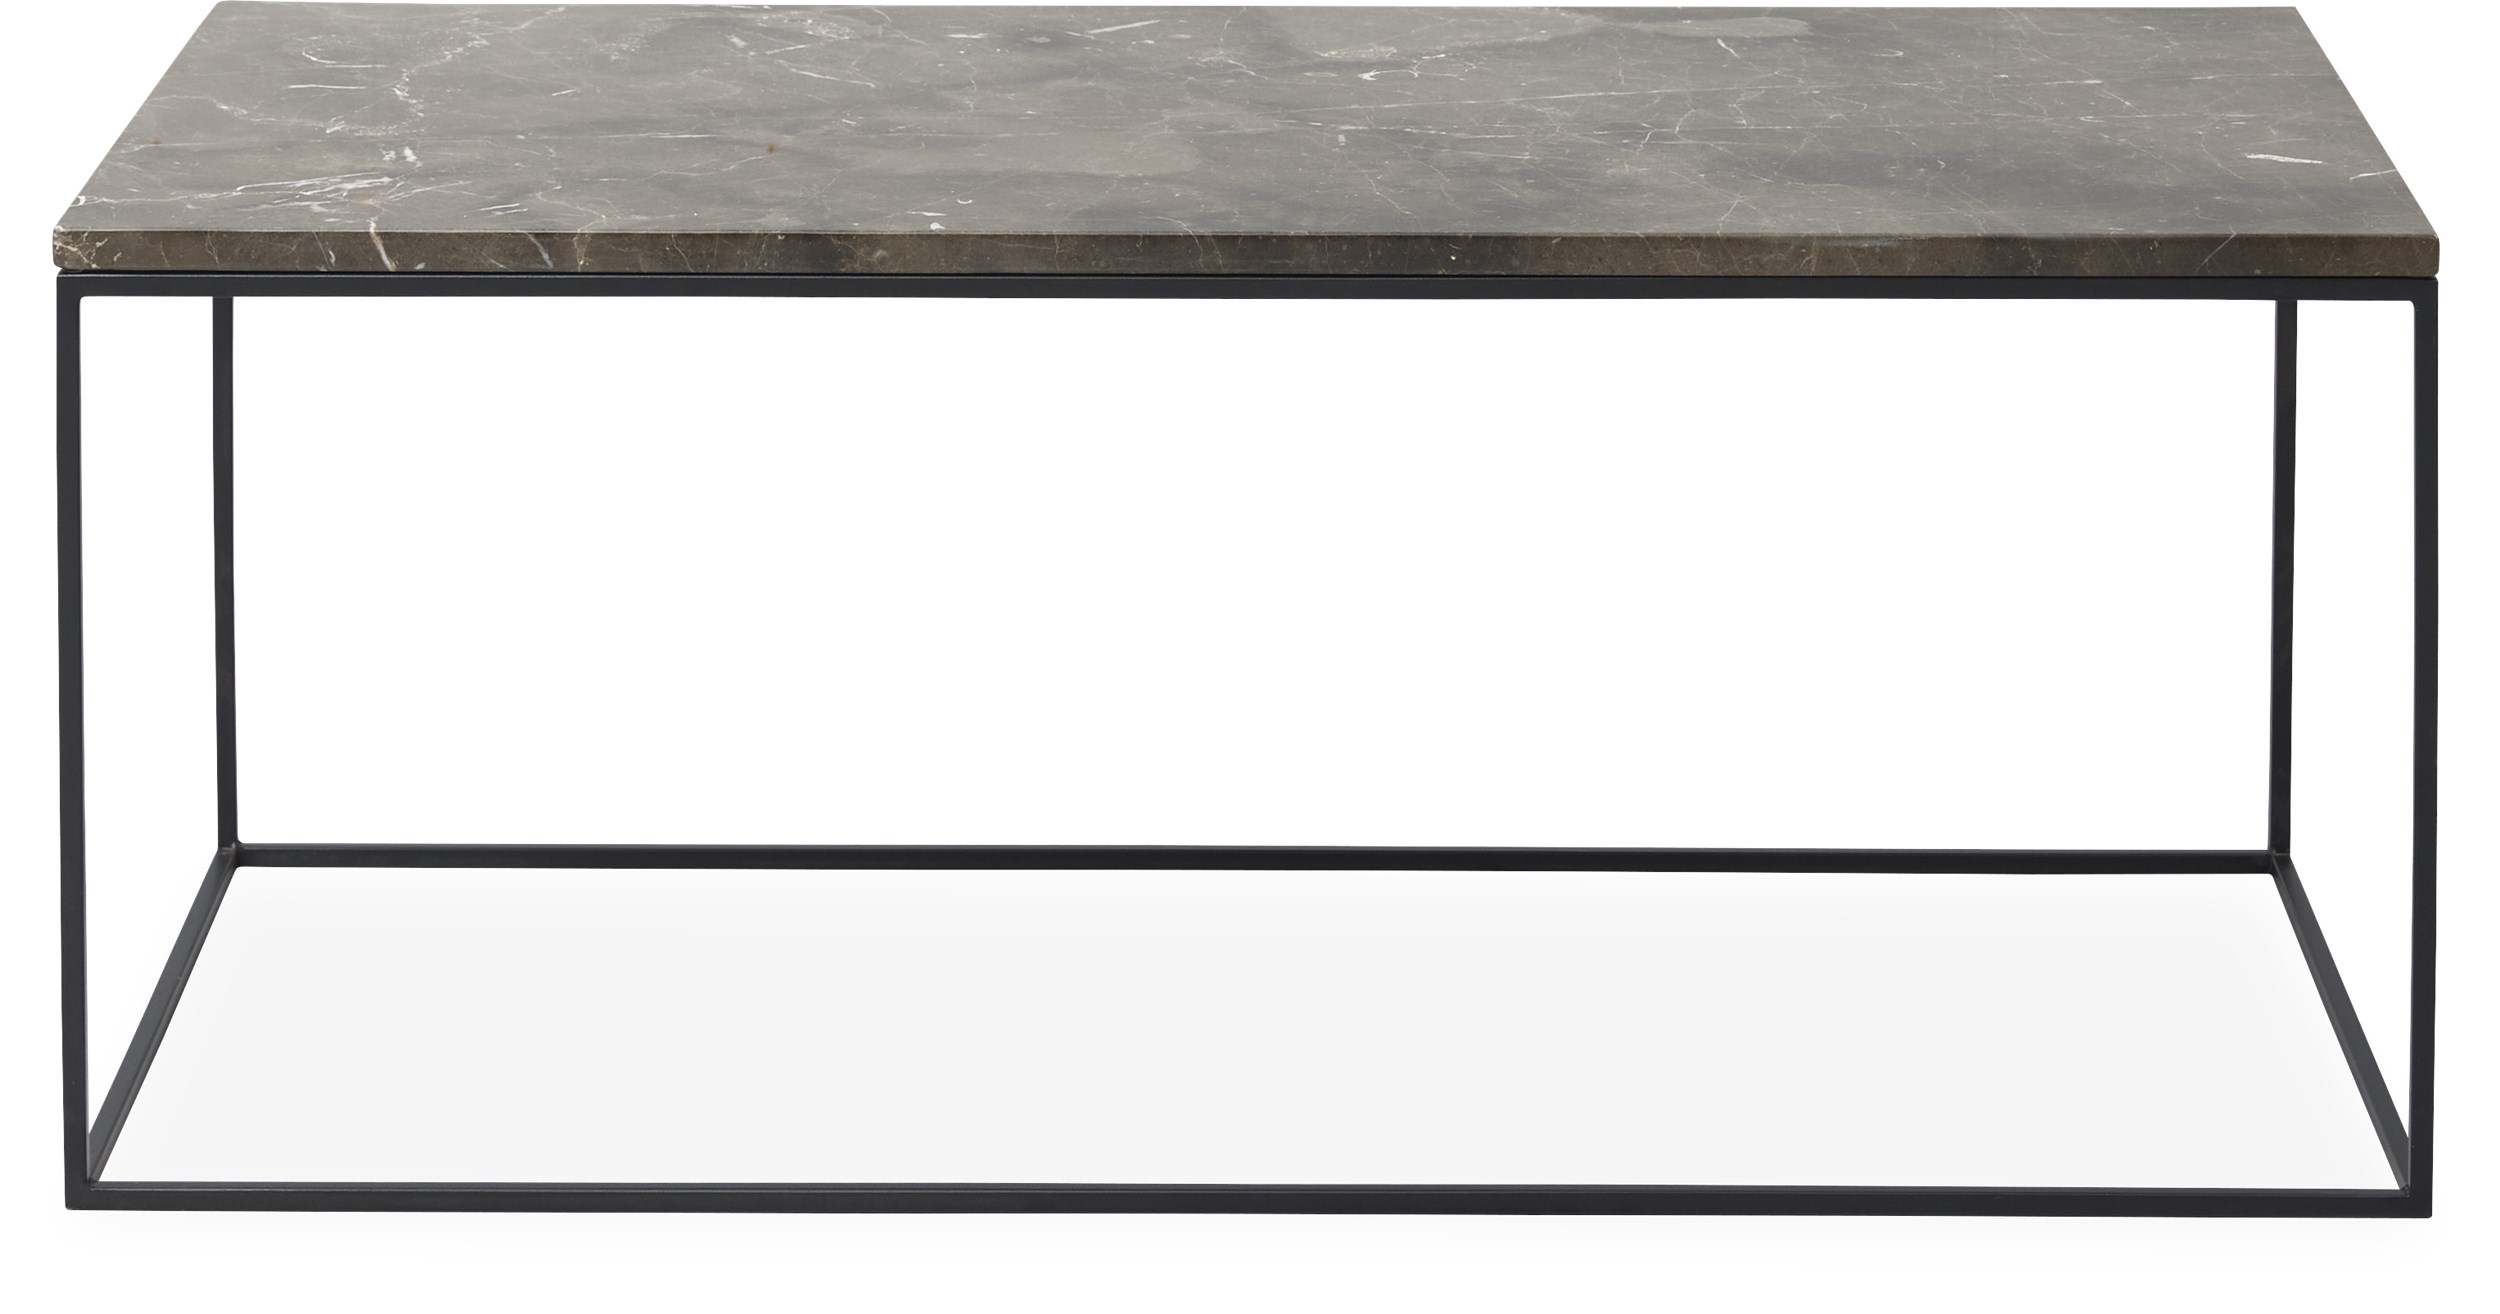 Square Soffbord 100 x 41,6 x 50 cm - Bordsskiva i brun emperador marmor och stomme i svartlackerad metall